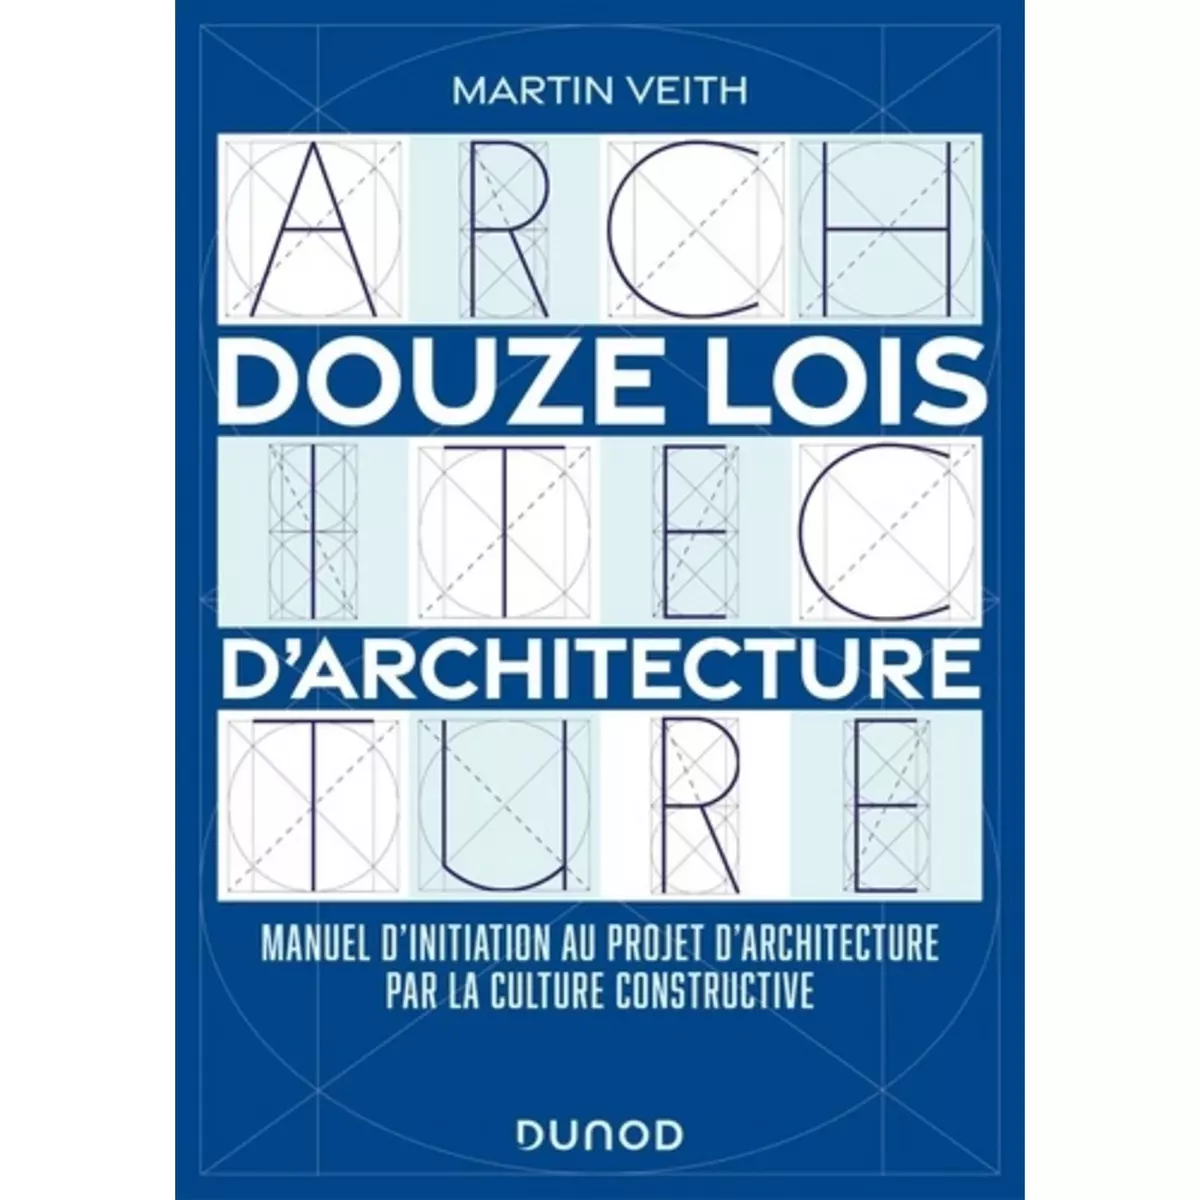  DOUZE LOIS D'ARCHITECTURE. MANUEL D'INITIATION AU PROJET D'ARCHITECTURE PAR LA CULTURE CONSTRUCTIVE, Veith Martin